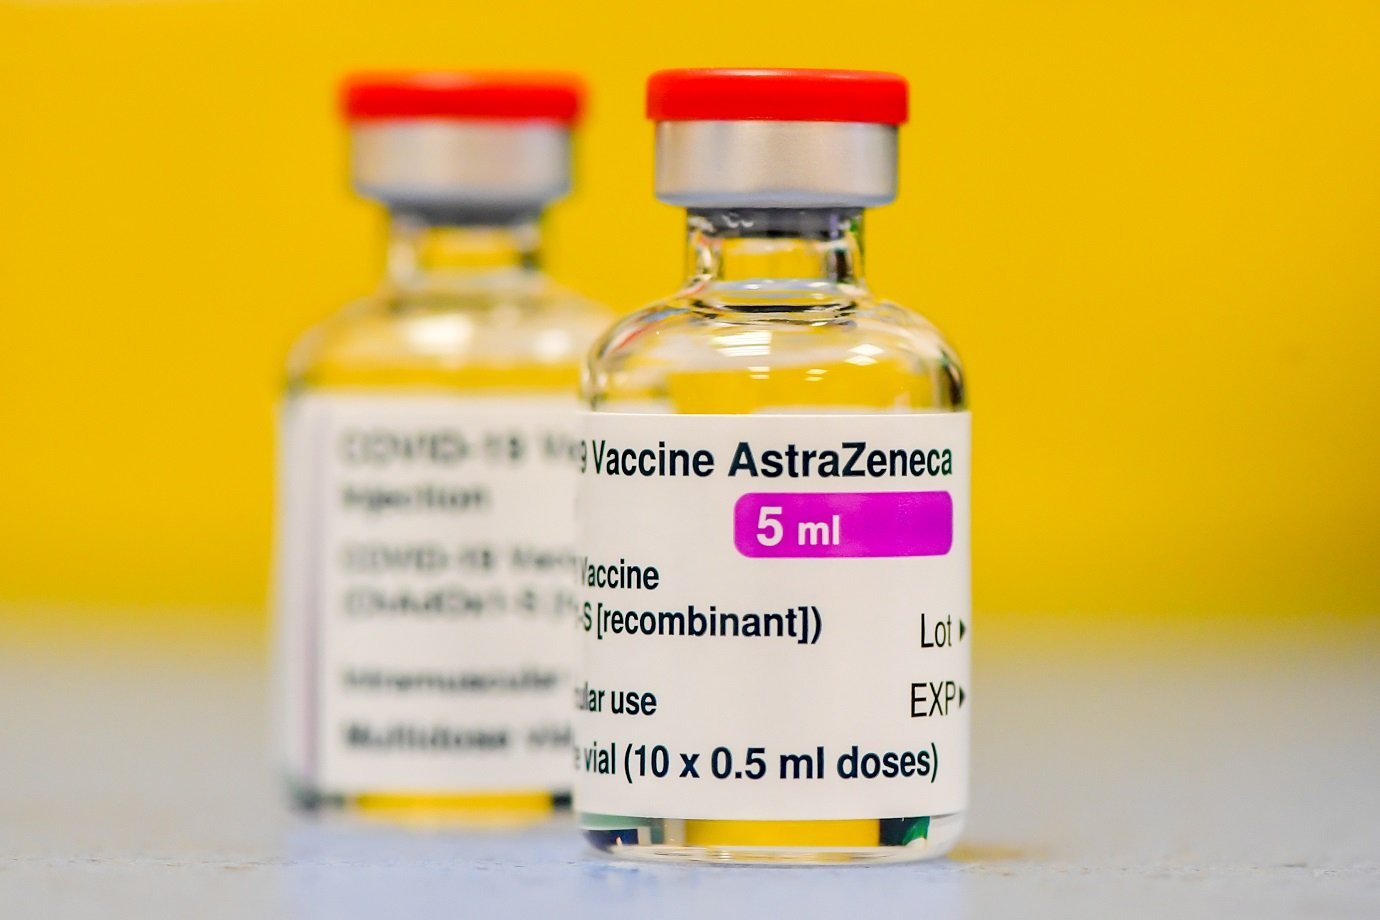 Vacina AstraZeneca e fiocruz